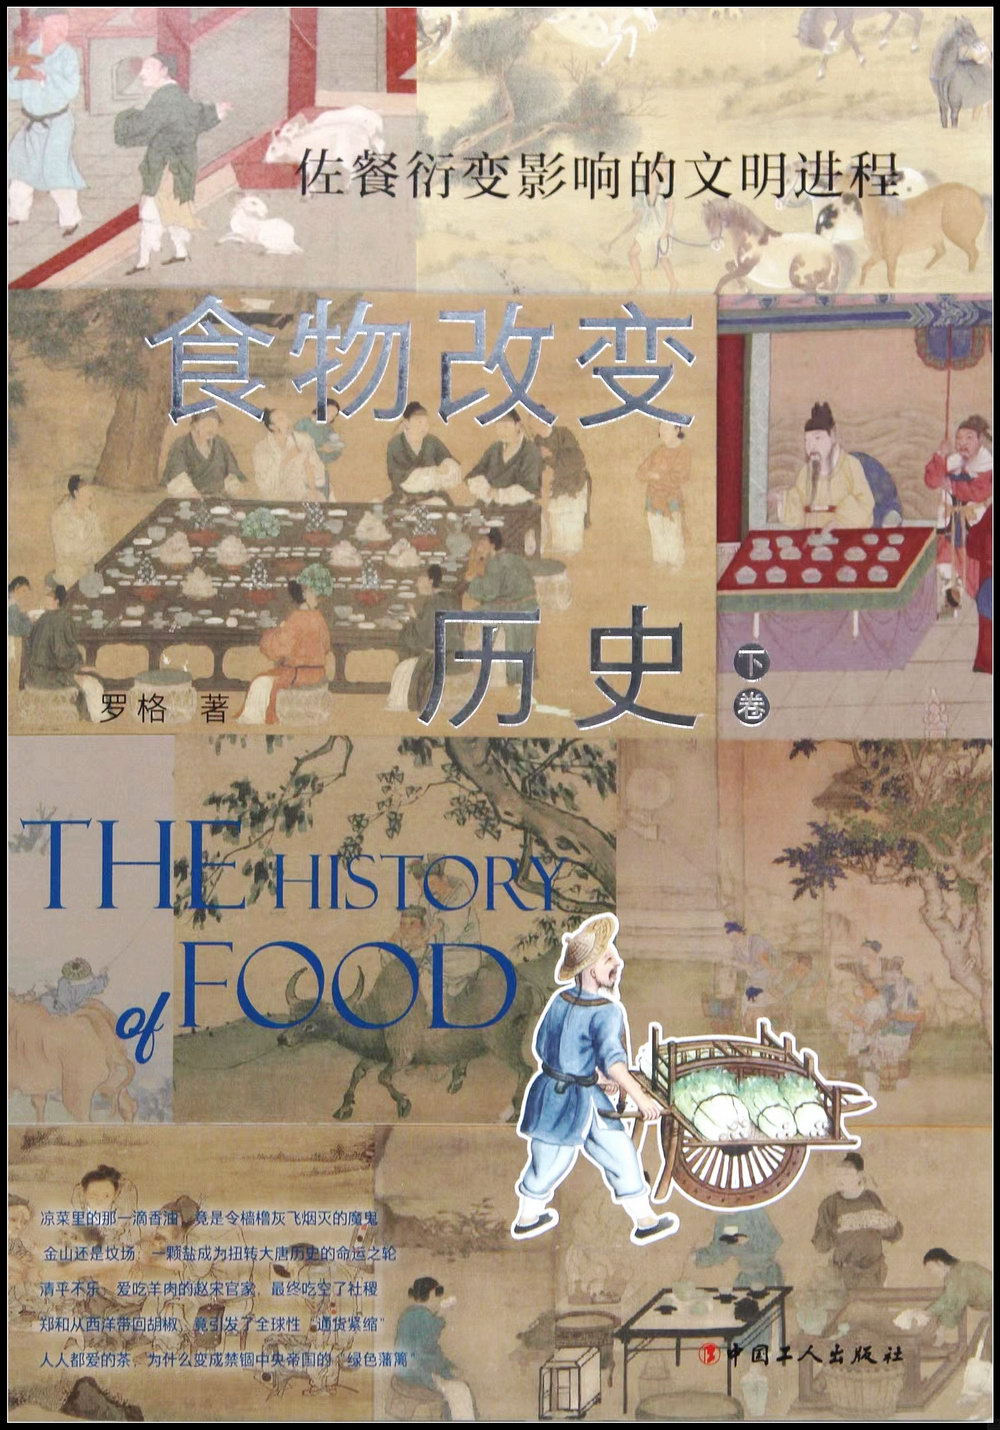 食物改變歷史(下卷):佐餐衍變影響的文明進程